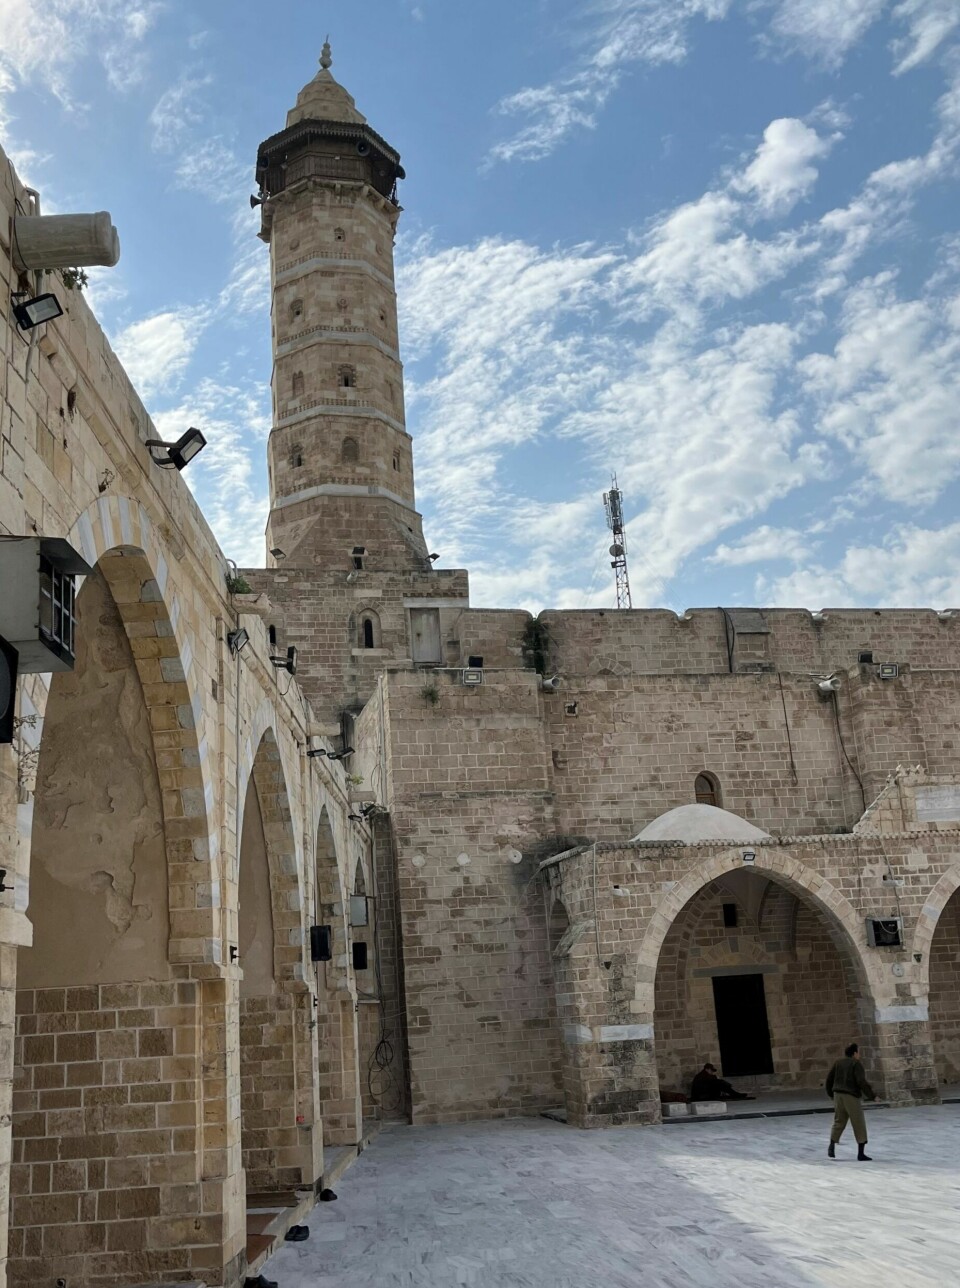 Omarimoskeen på Gaza fotografert 29. november 2022. Moskeens bibliotek inneholdt mange sjeldne bøker og dokumenter helt tilbake fra 1400-tallet.